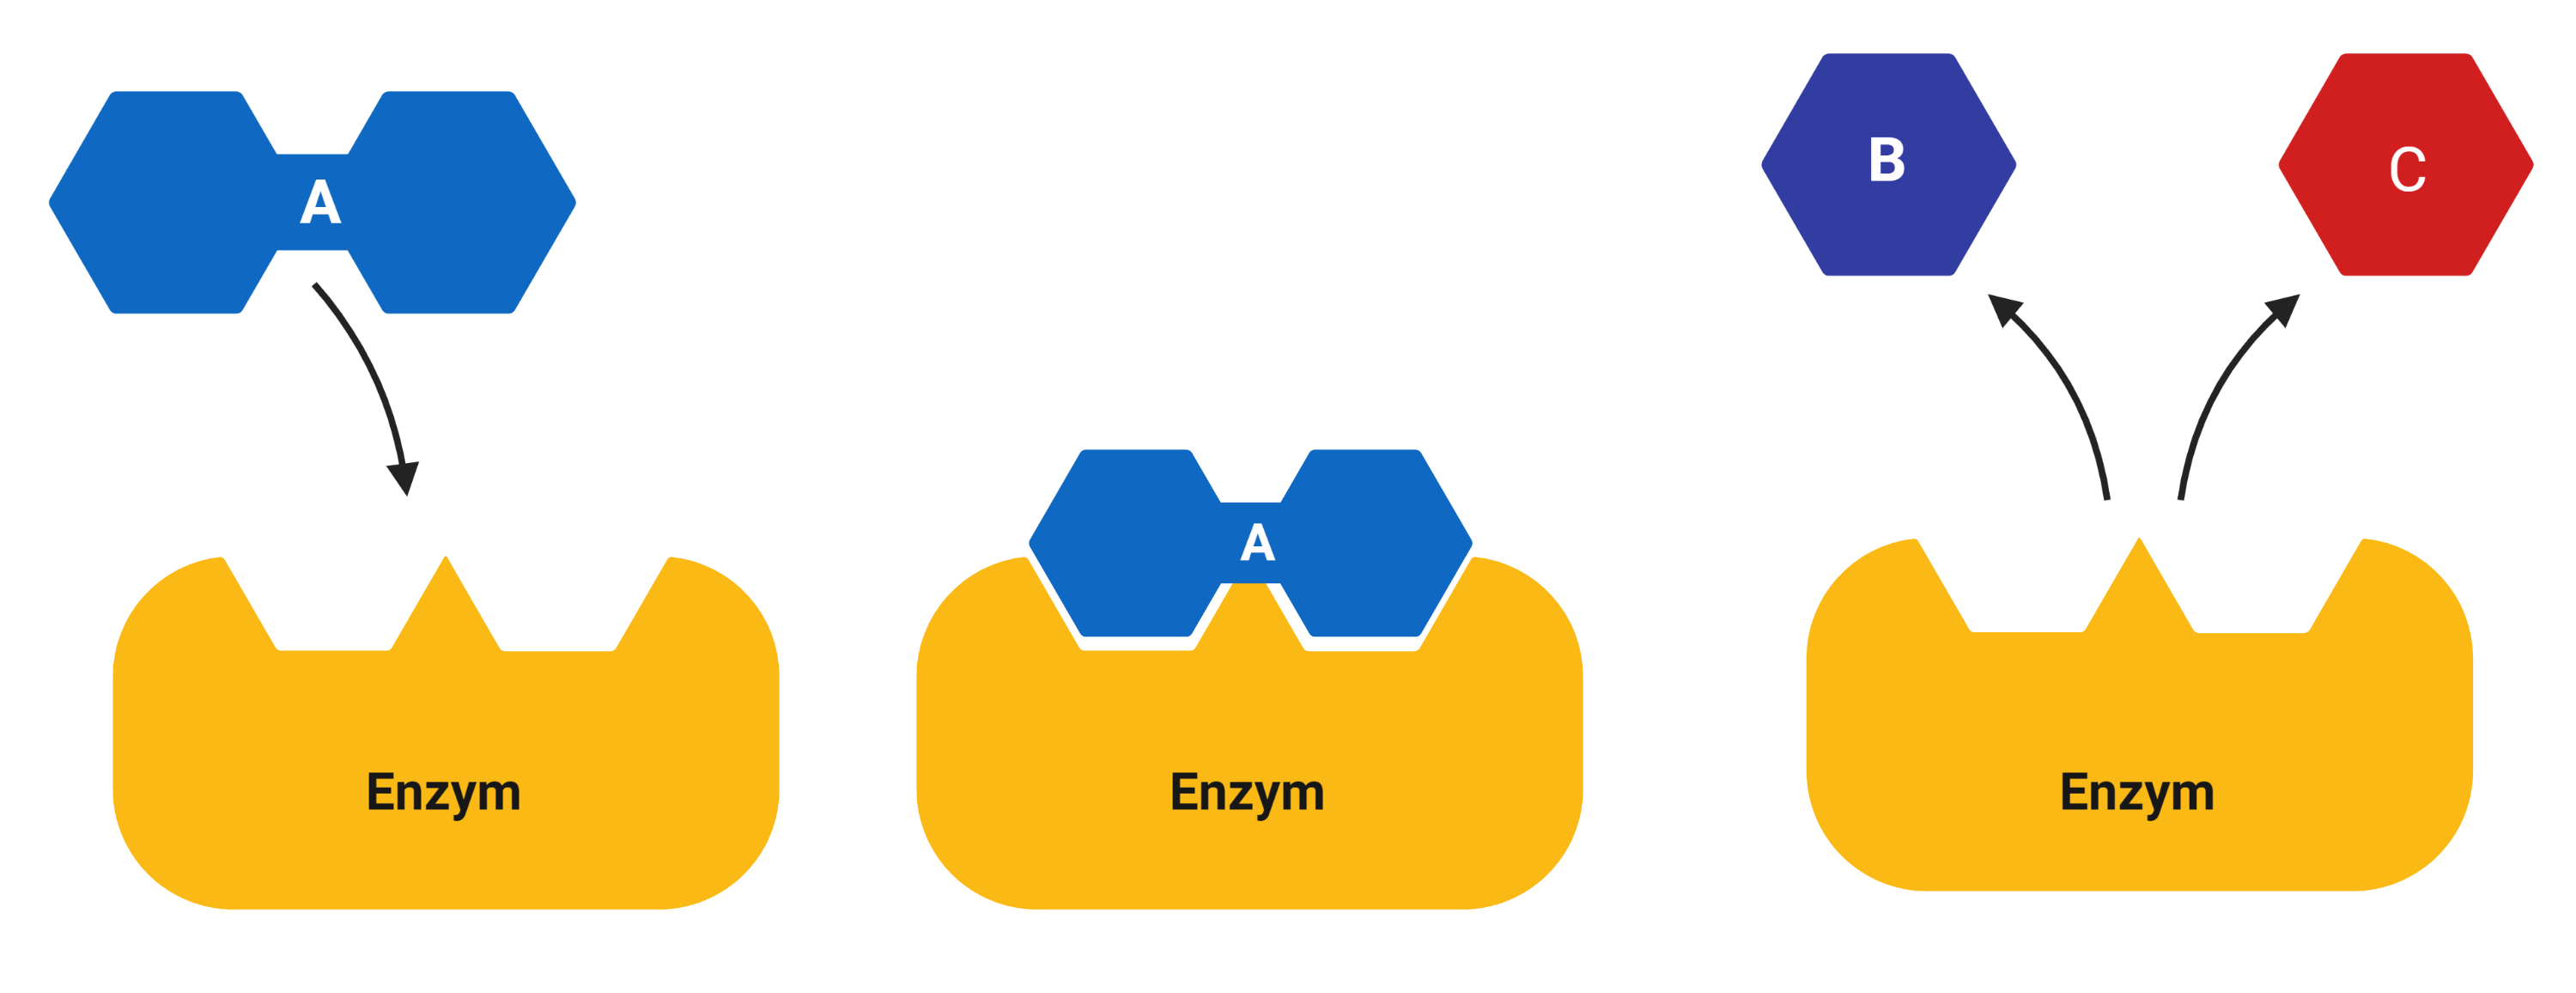 Enzym